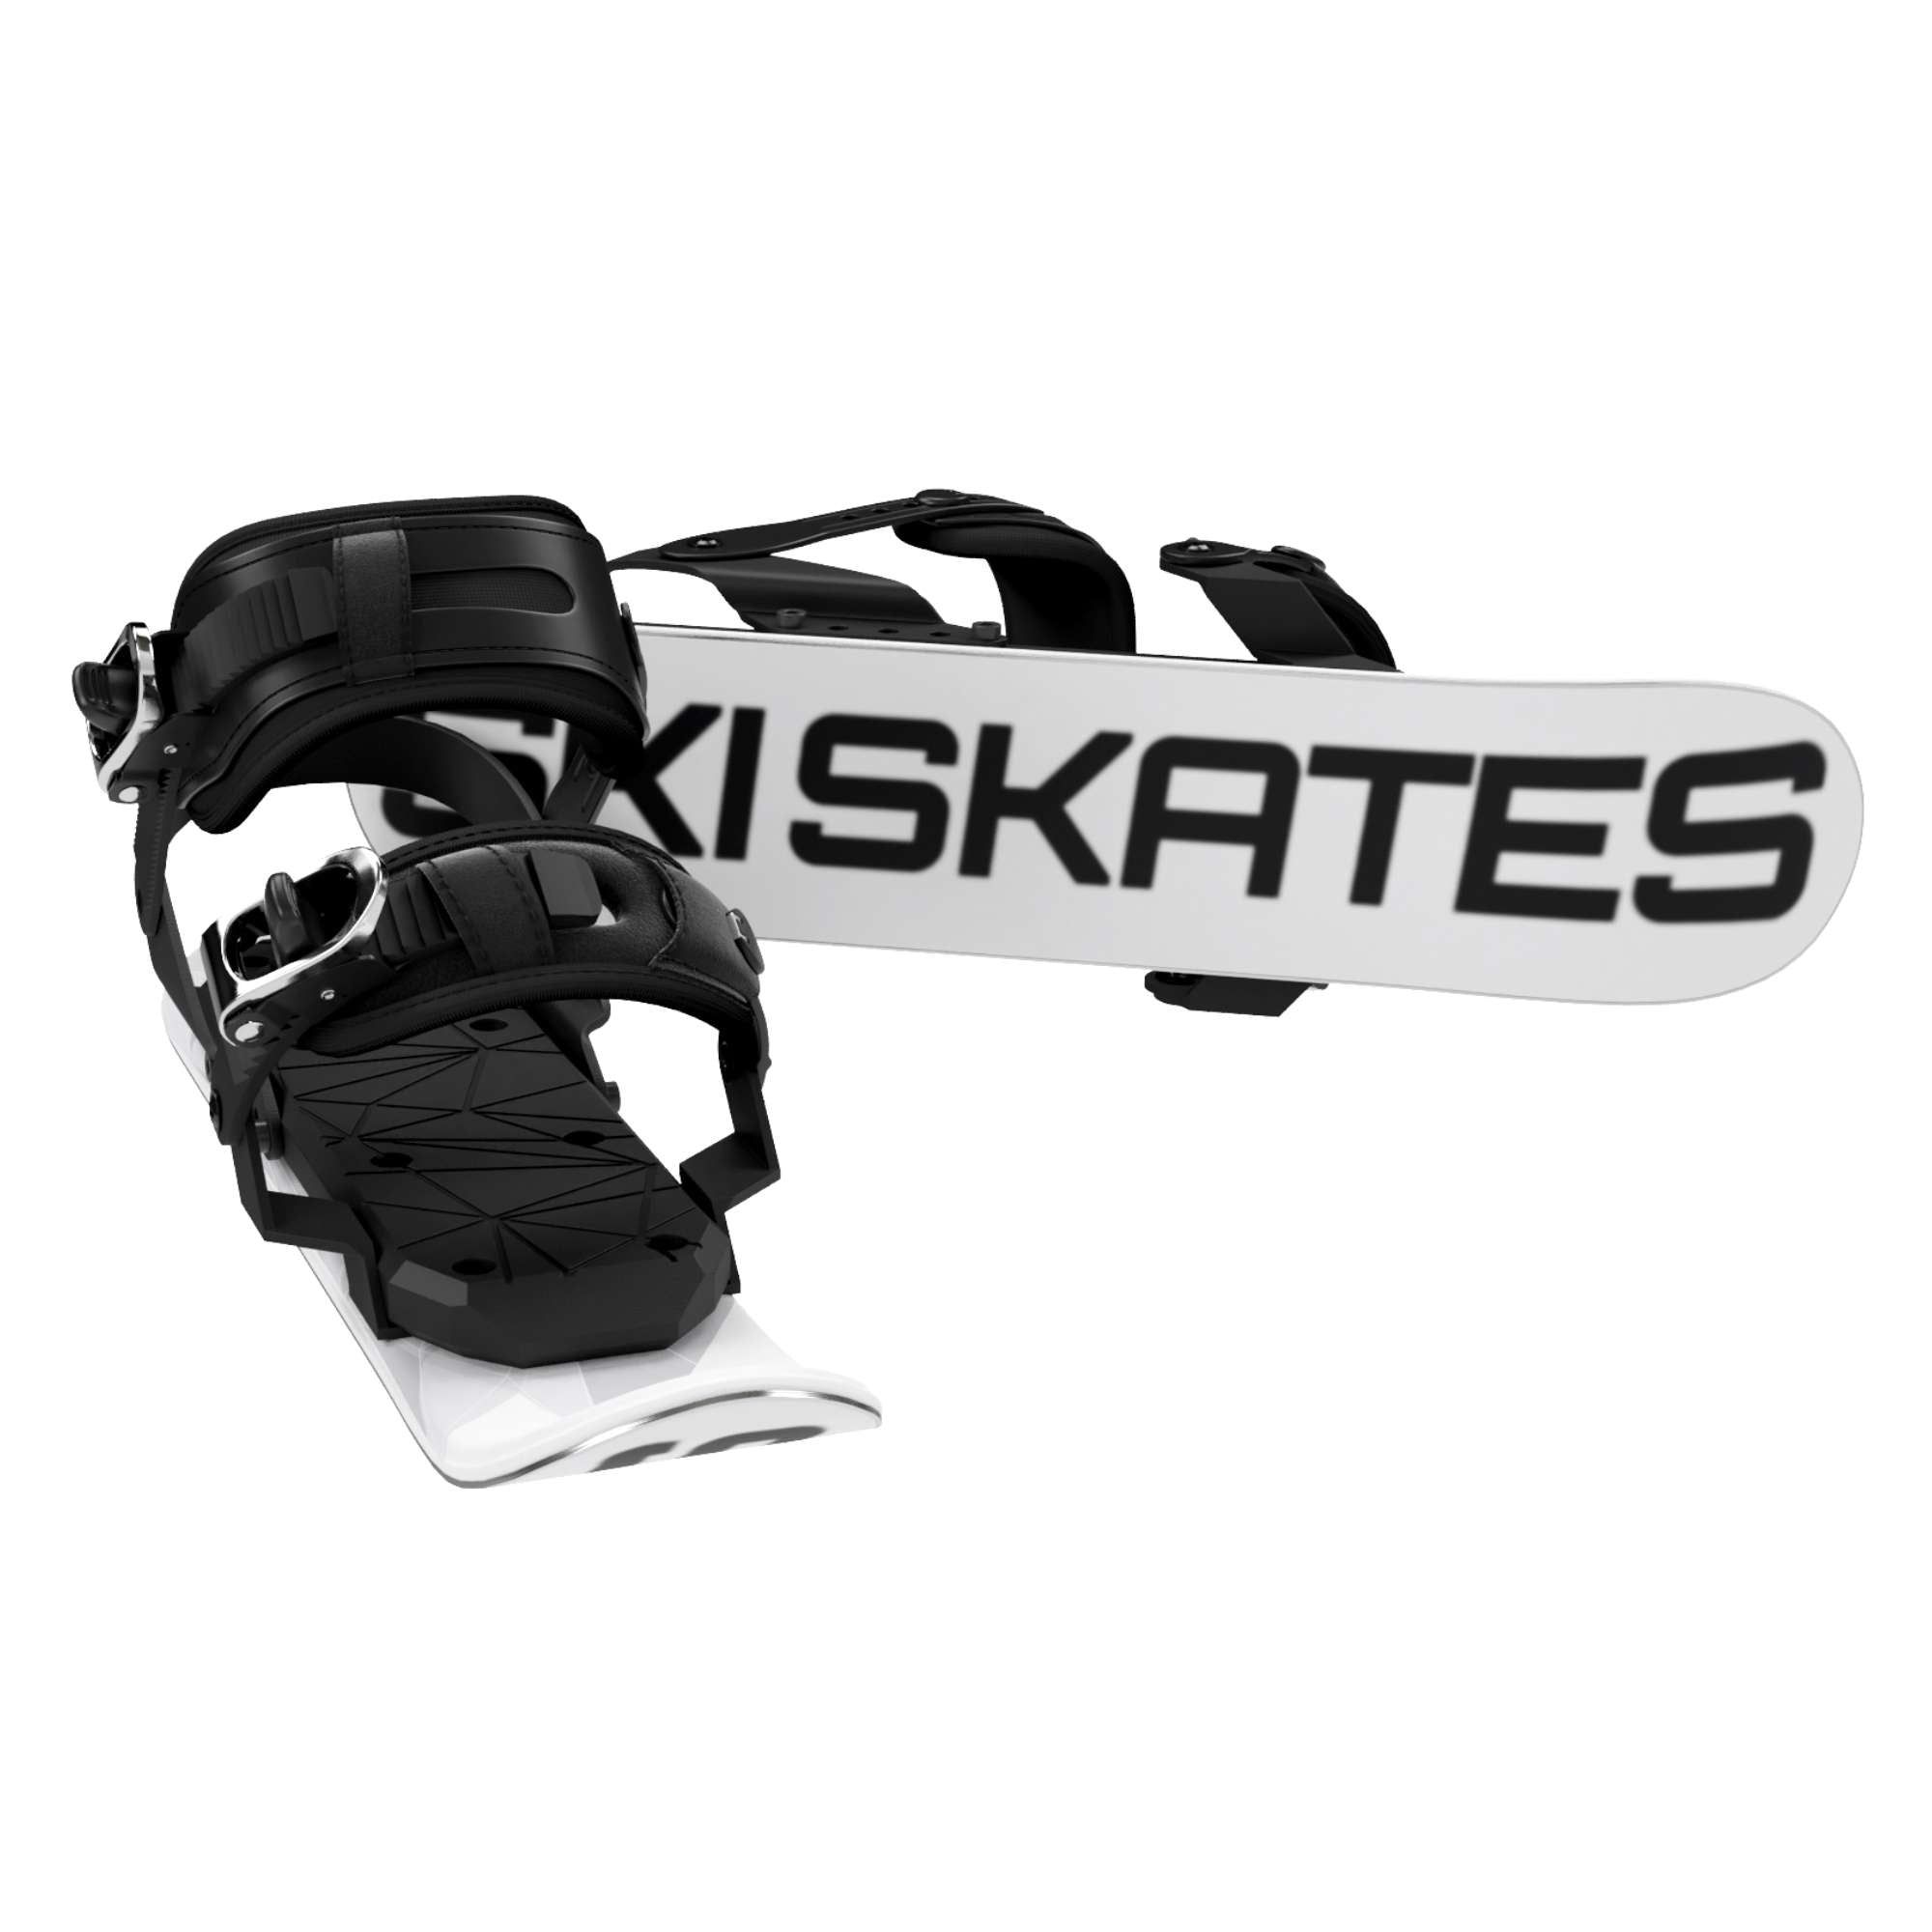 Skiskates - Mini Ski Skates | Snowboard Boots Model